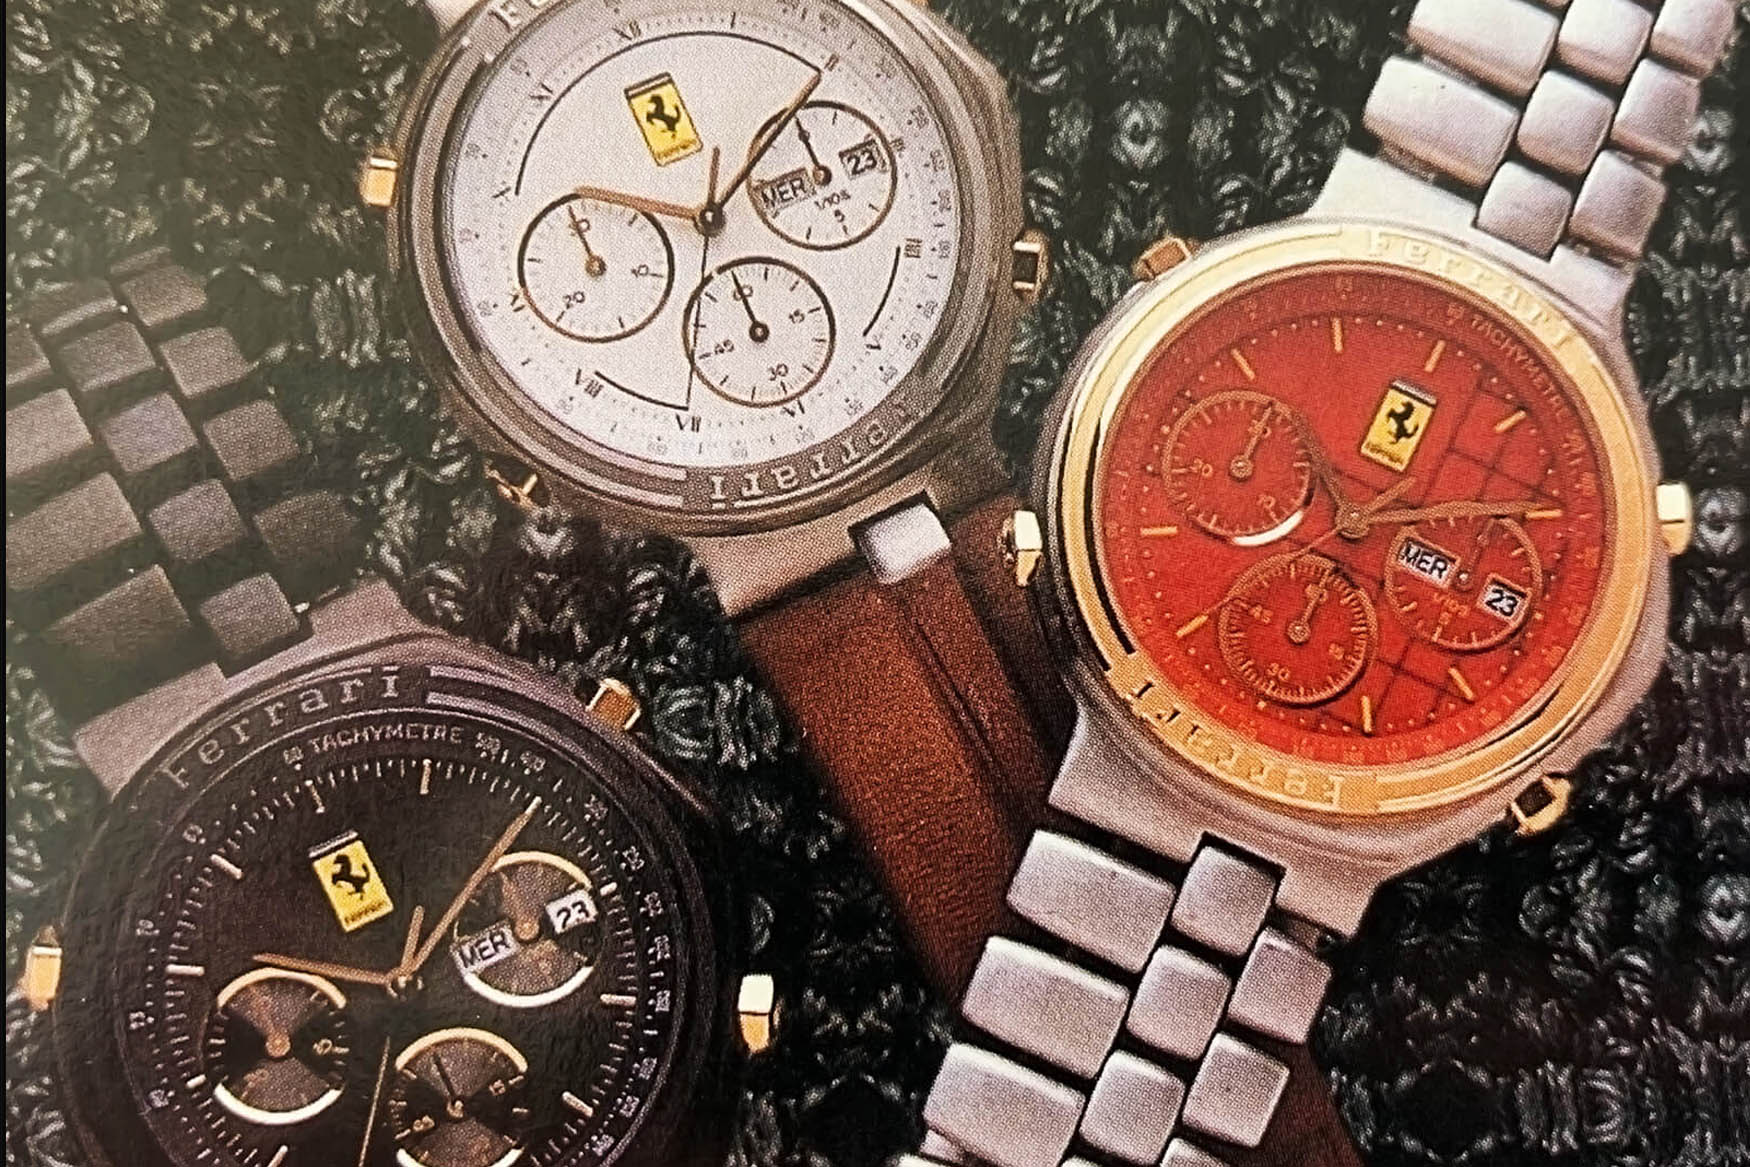 Cartier Ferrari Chronographs Quartz